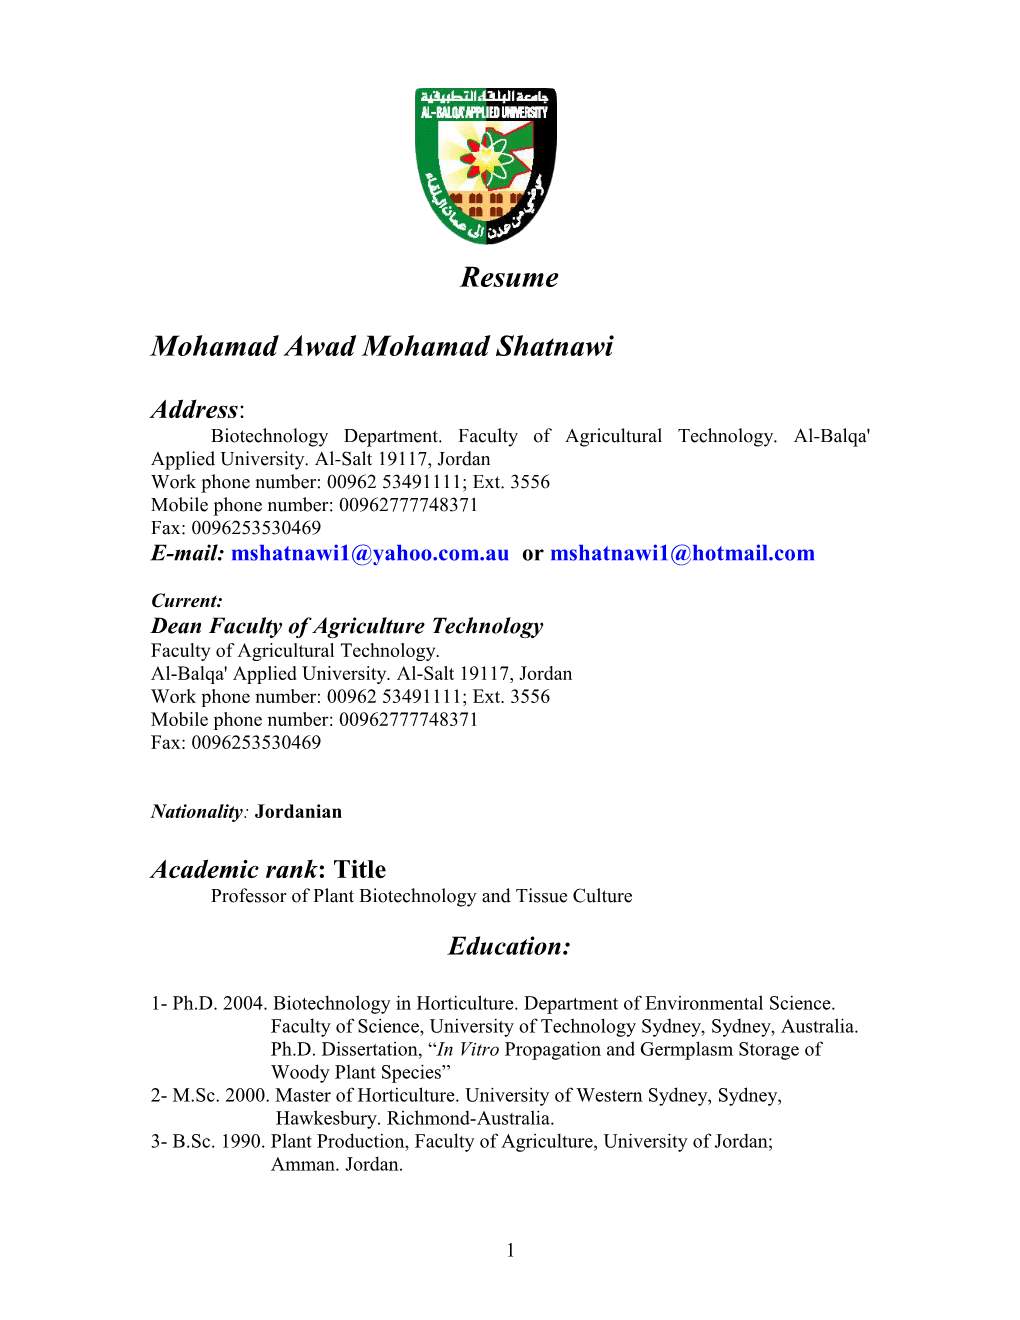 Mohamad Awad Mohamad Shatnawi